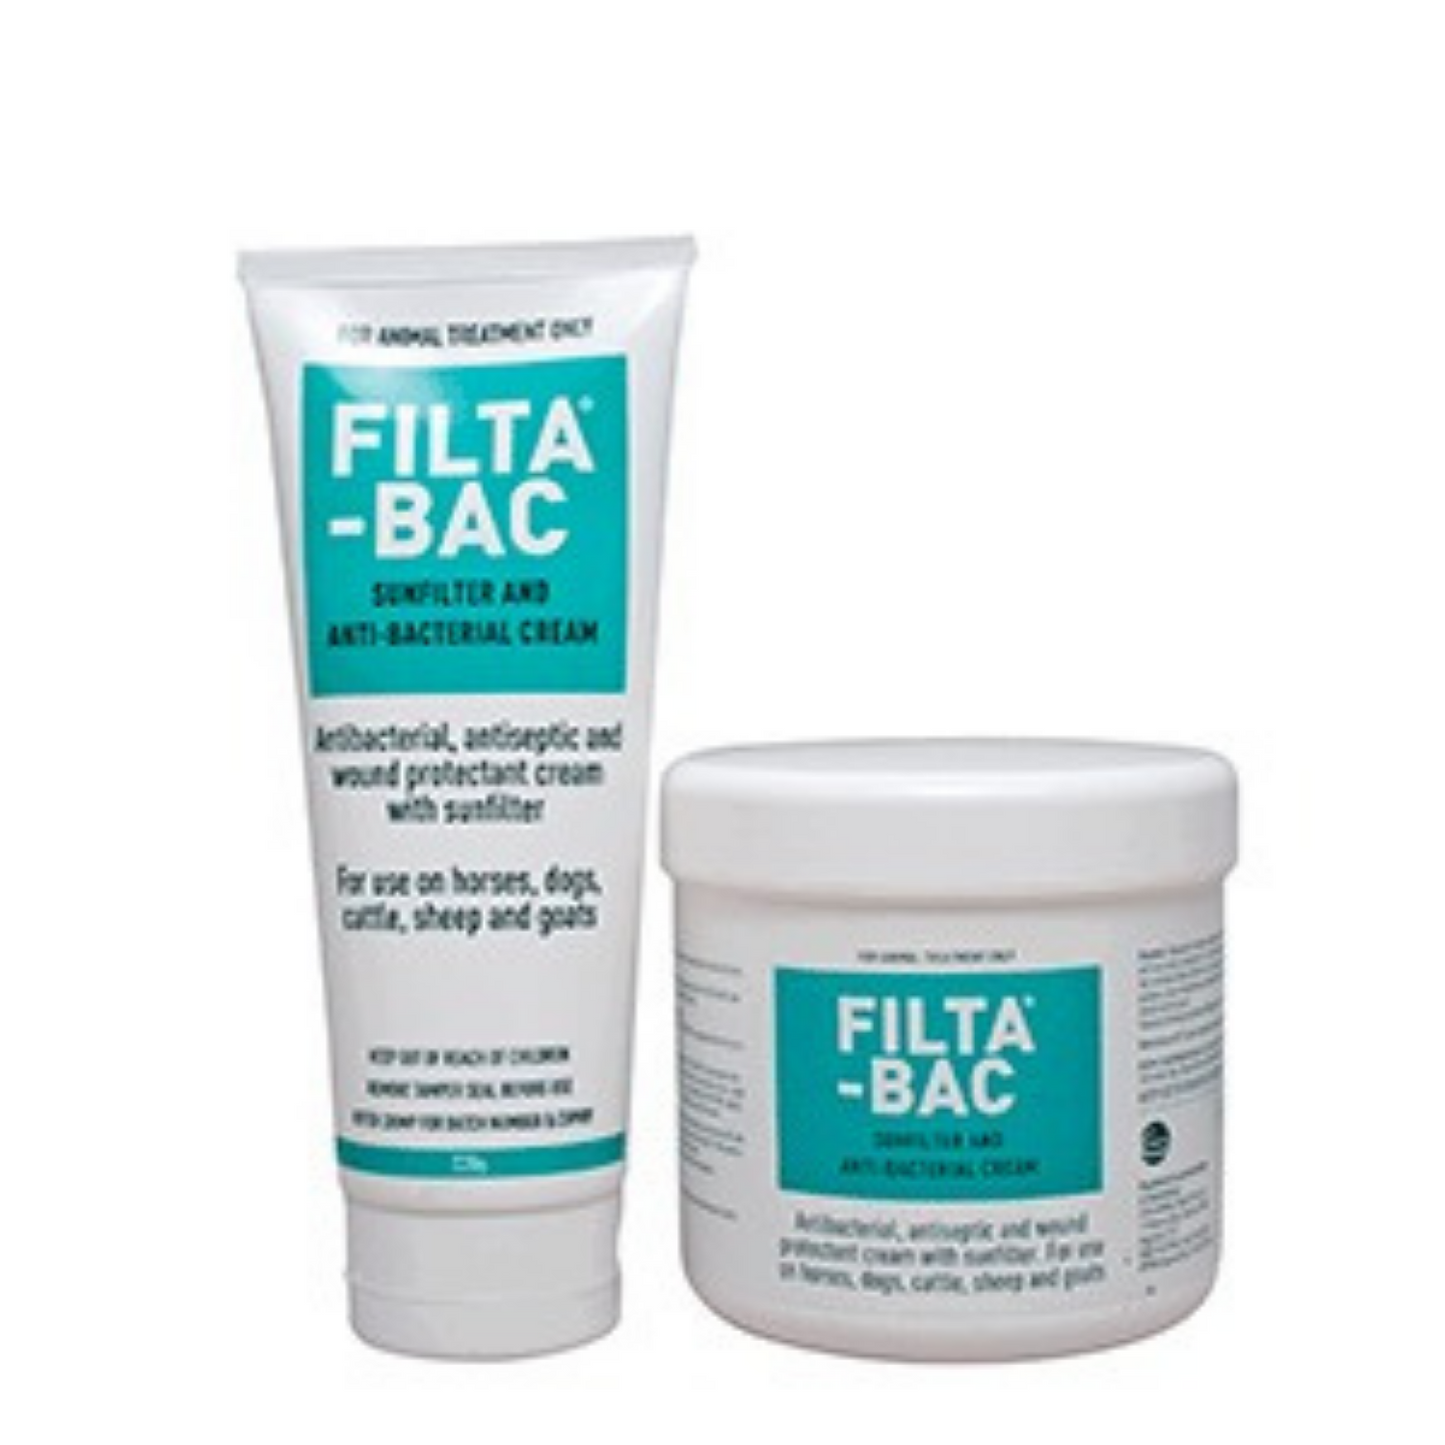 Filta-Bac Antibacterial Sunscreen